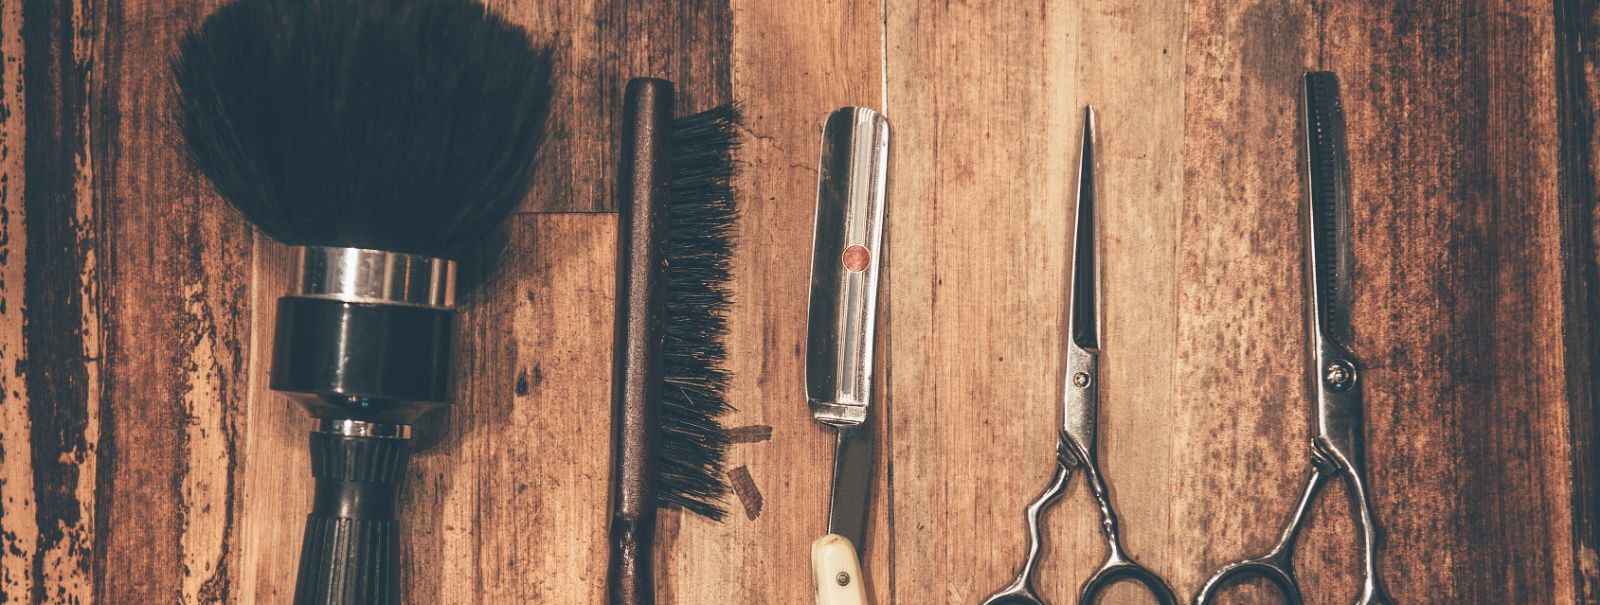 Viimastel aastatel oleme tunnistajaks olnud klassikalise habemeajamise märkimisväärsele taassünnile, trendile, mis on enamat kui lihtsalt juukselõikus. See rene